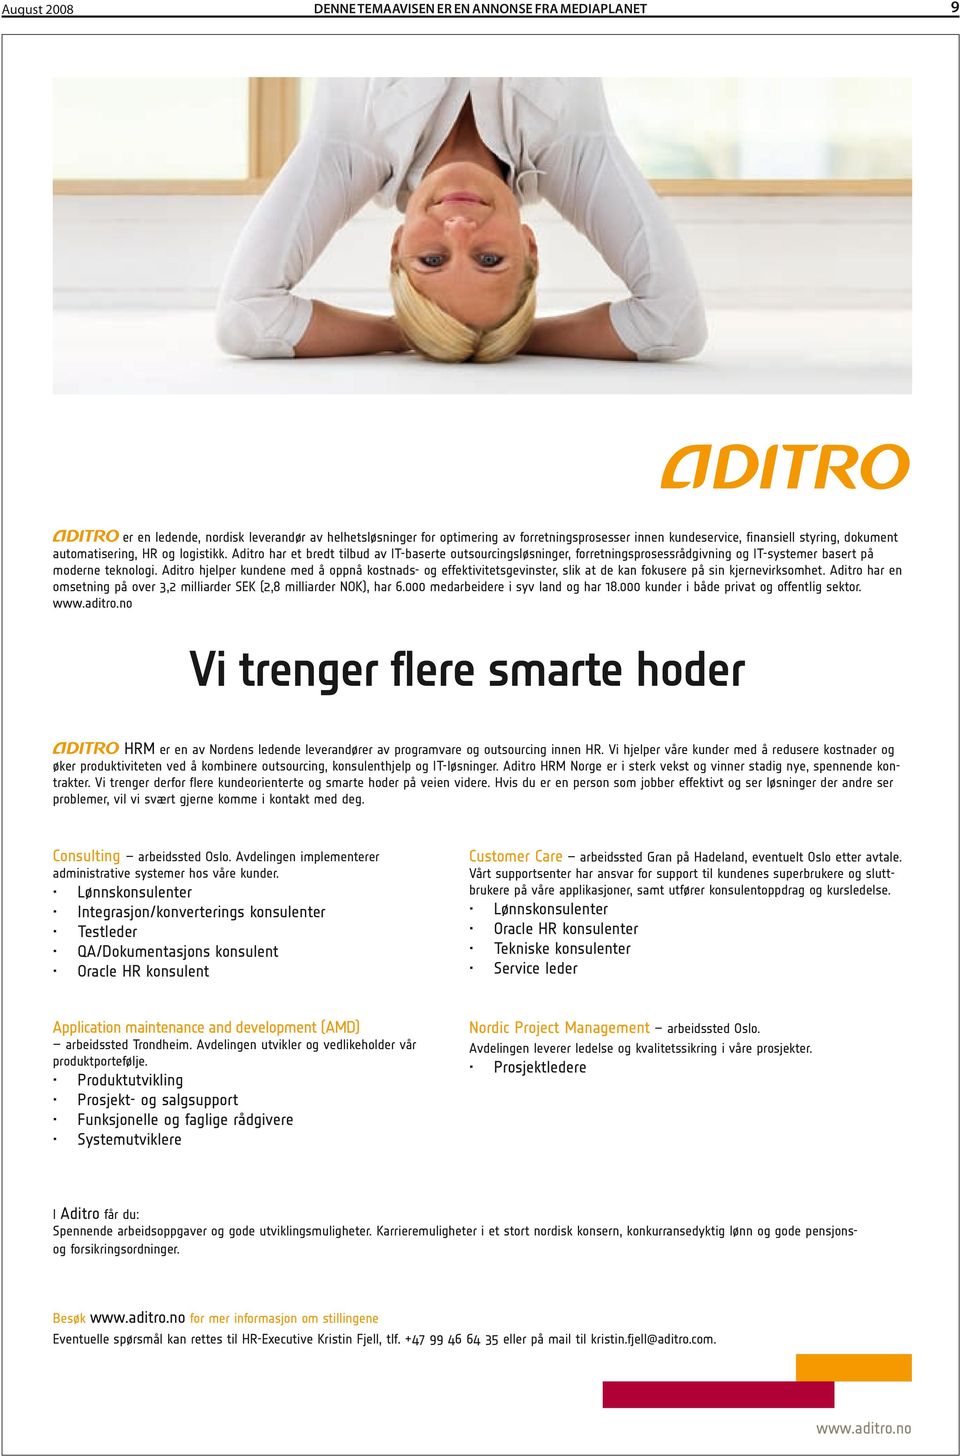 Aditro hjelper kundene med å oppnå kostnads- og effektivitetsgevinster, slik at de kan fokusere på sin kjernevirksomhet. Aditro har en omsetning på over 3,2 milliarder SEK (2,8 milliarder NOK), har 6.